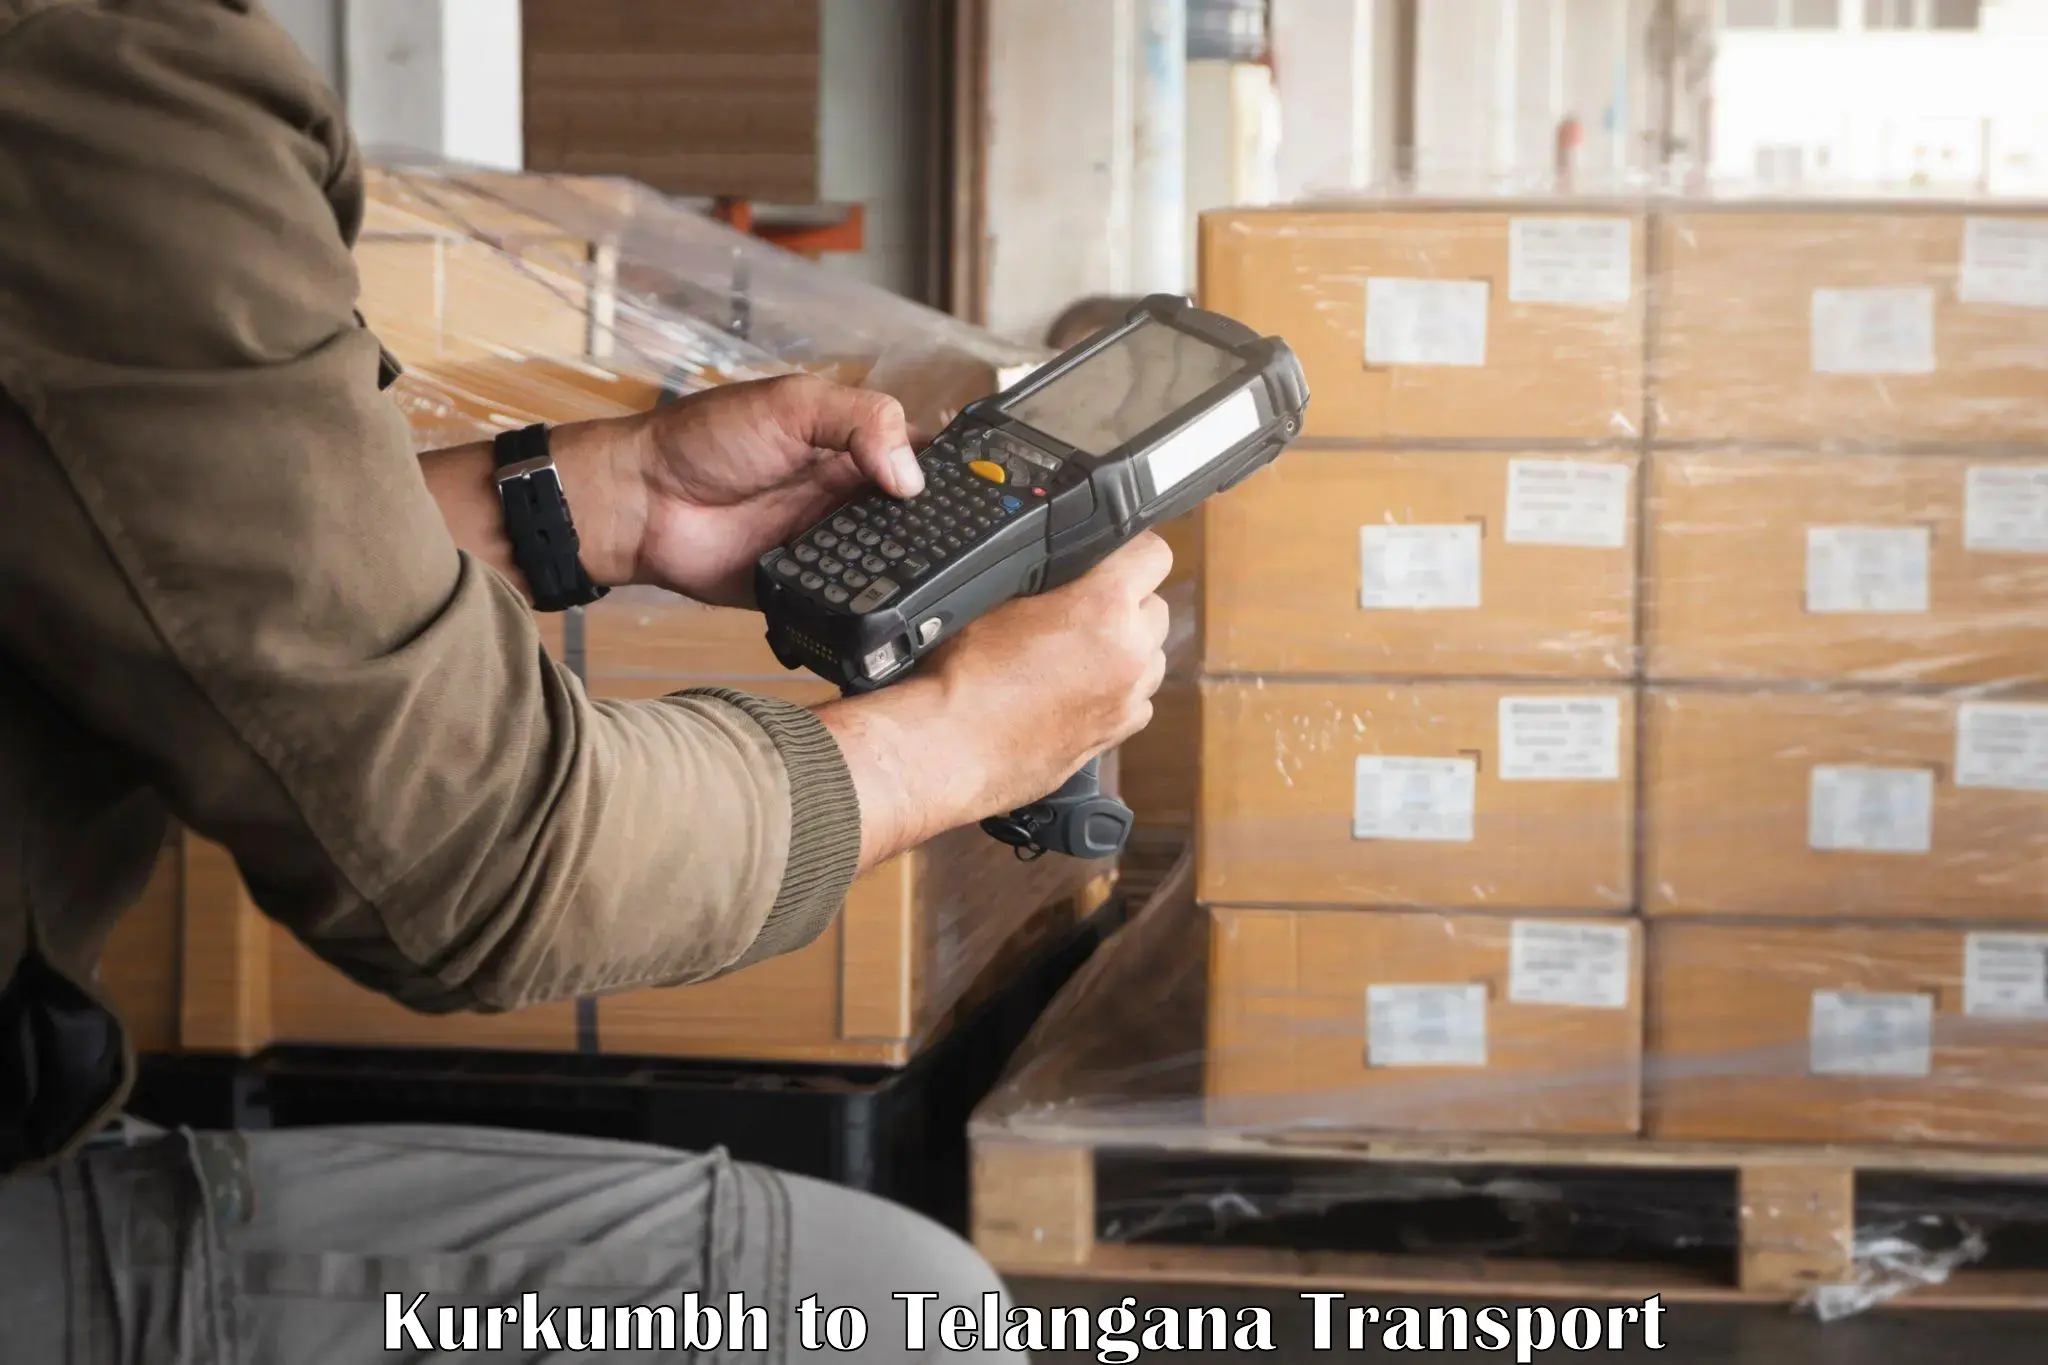 Transport in sharing Kurkumbh to Yellandu